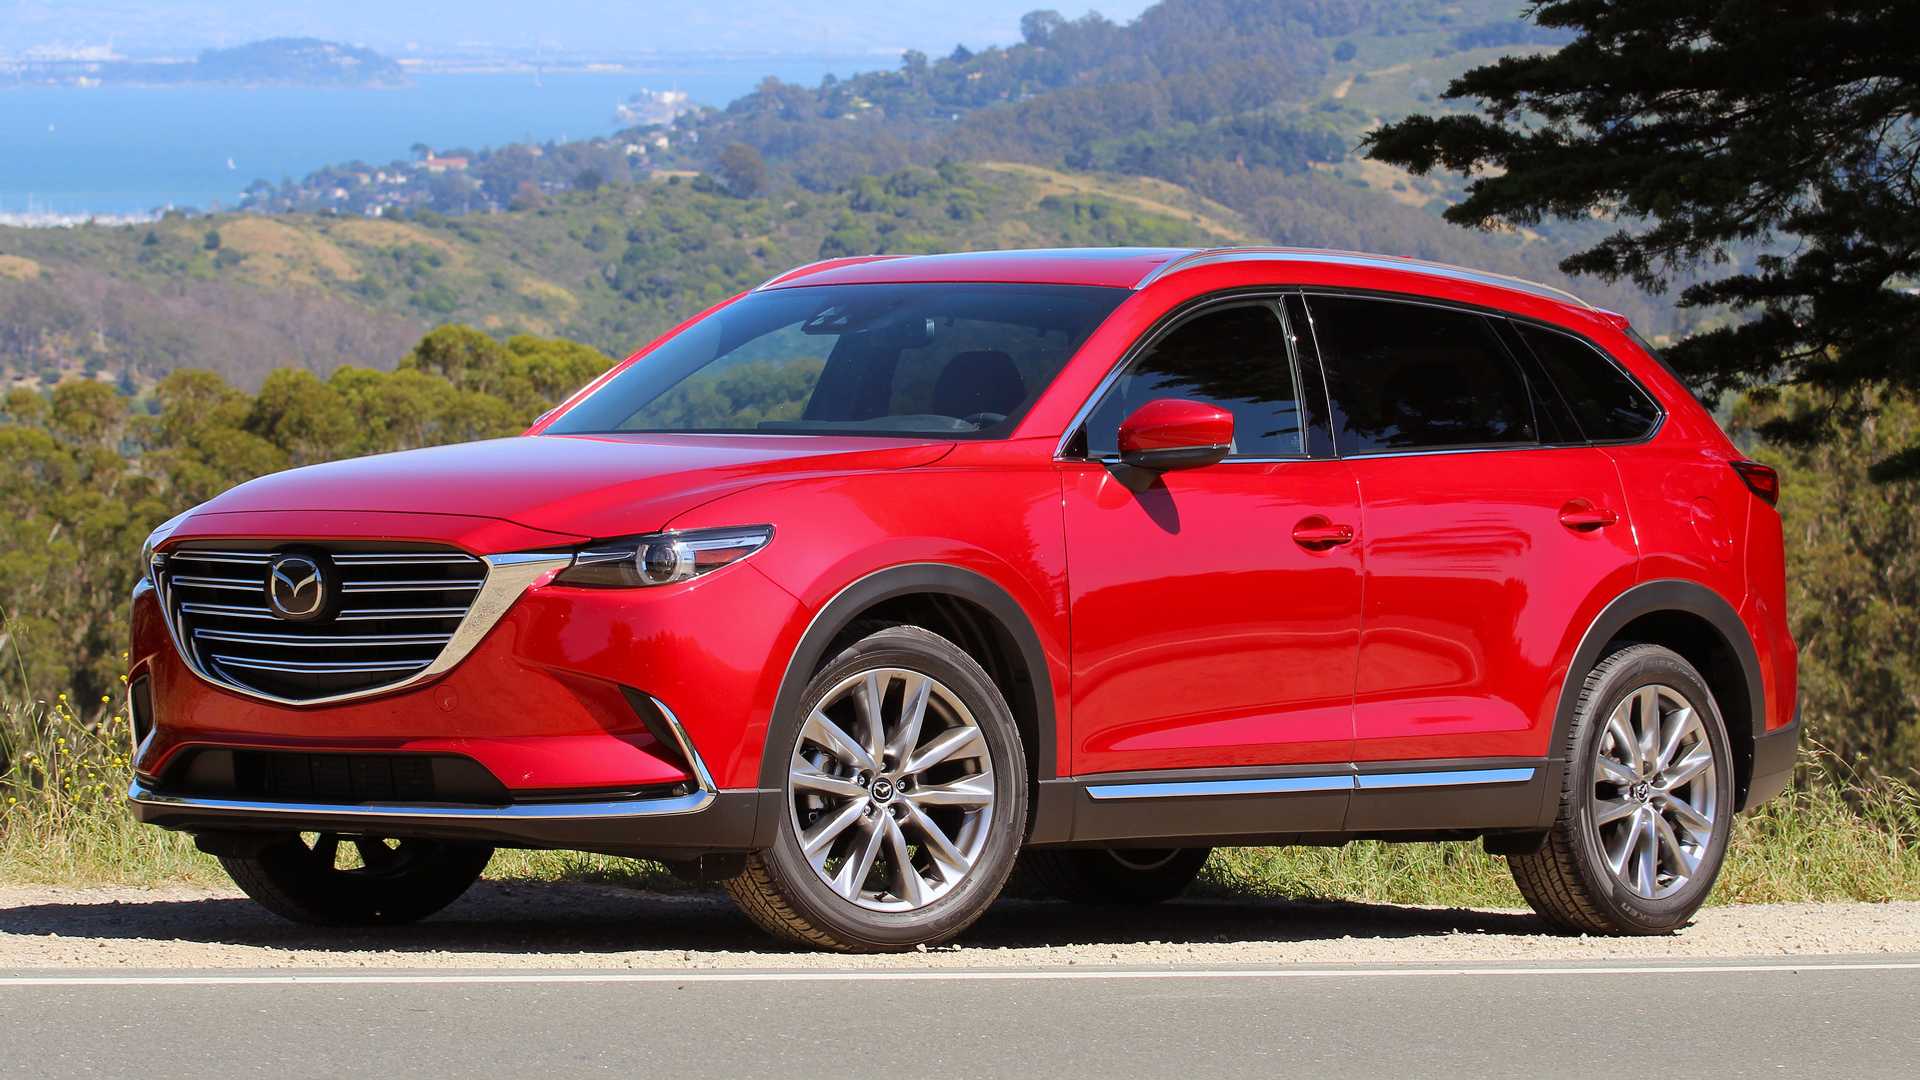 First Drive: 2016 Mazda CX-9